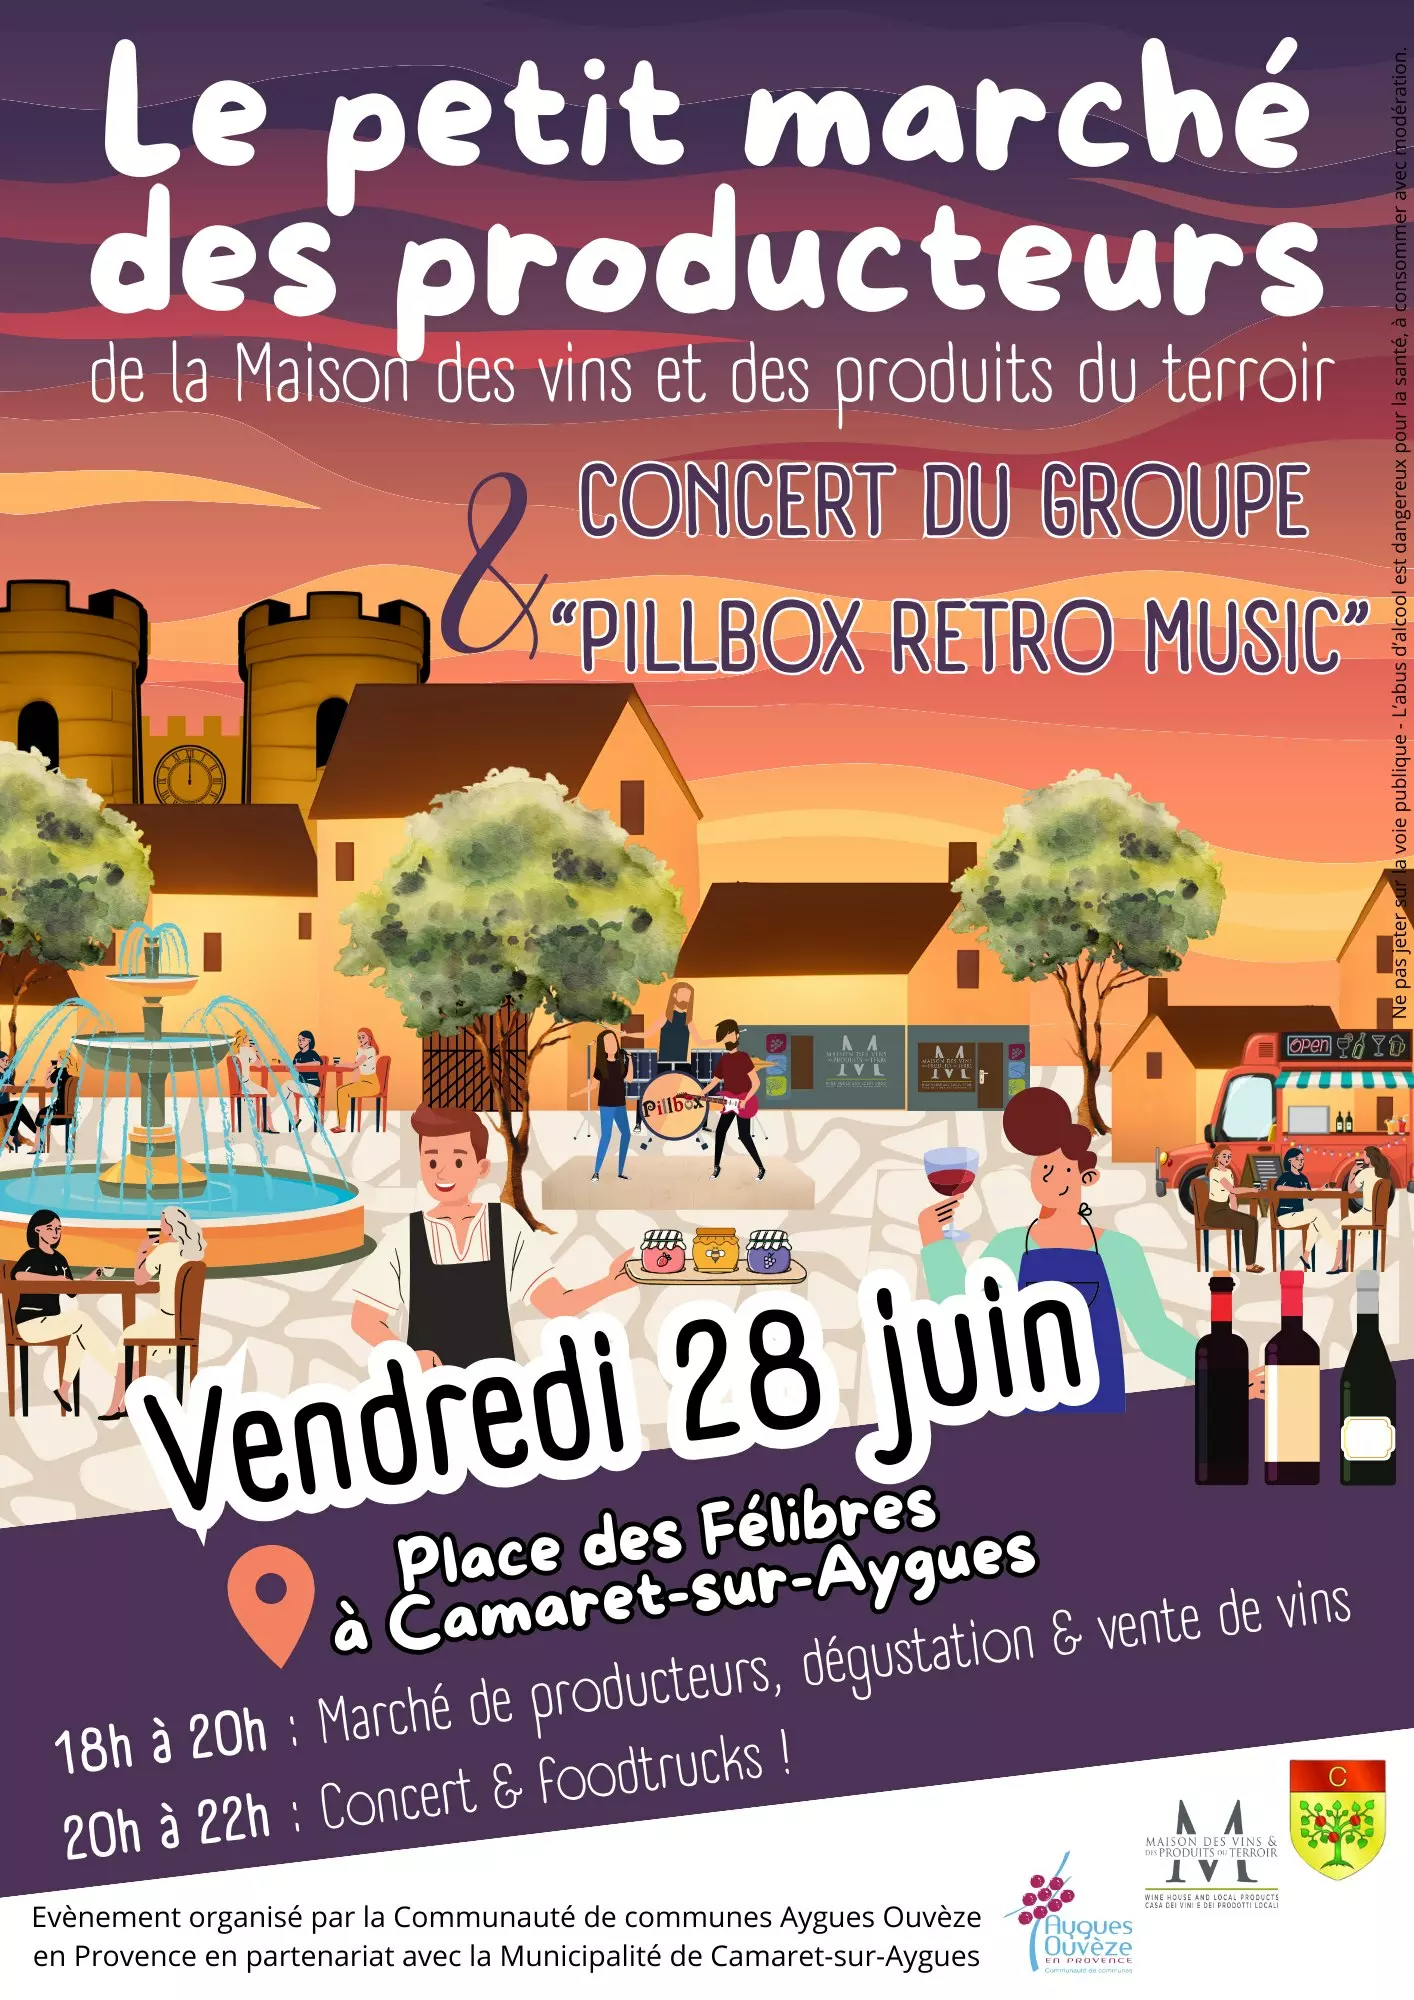 Le petit marché des producteurs de la Maison des vins et des produits du terroir de Camaret-sur-Aygues suivi d'un concert avec le groupe Pillbox / rétro music le vendredi 28 juin à partir de 18h00 sur la place des Félibres